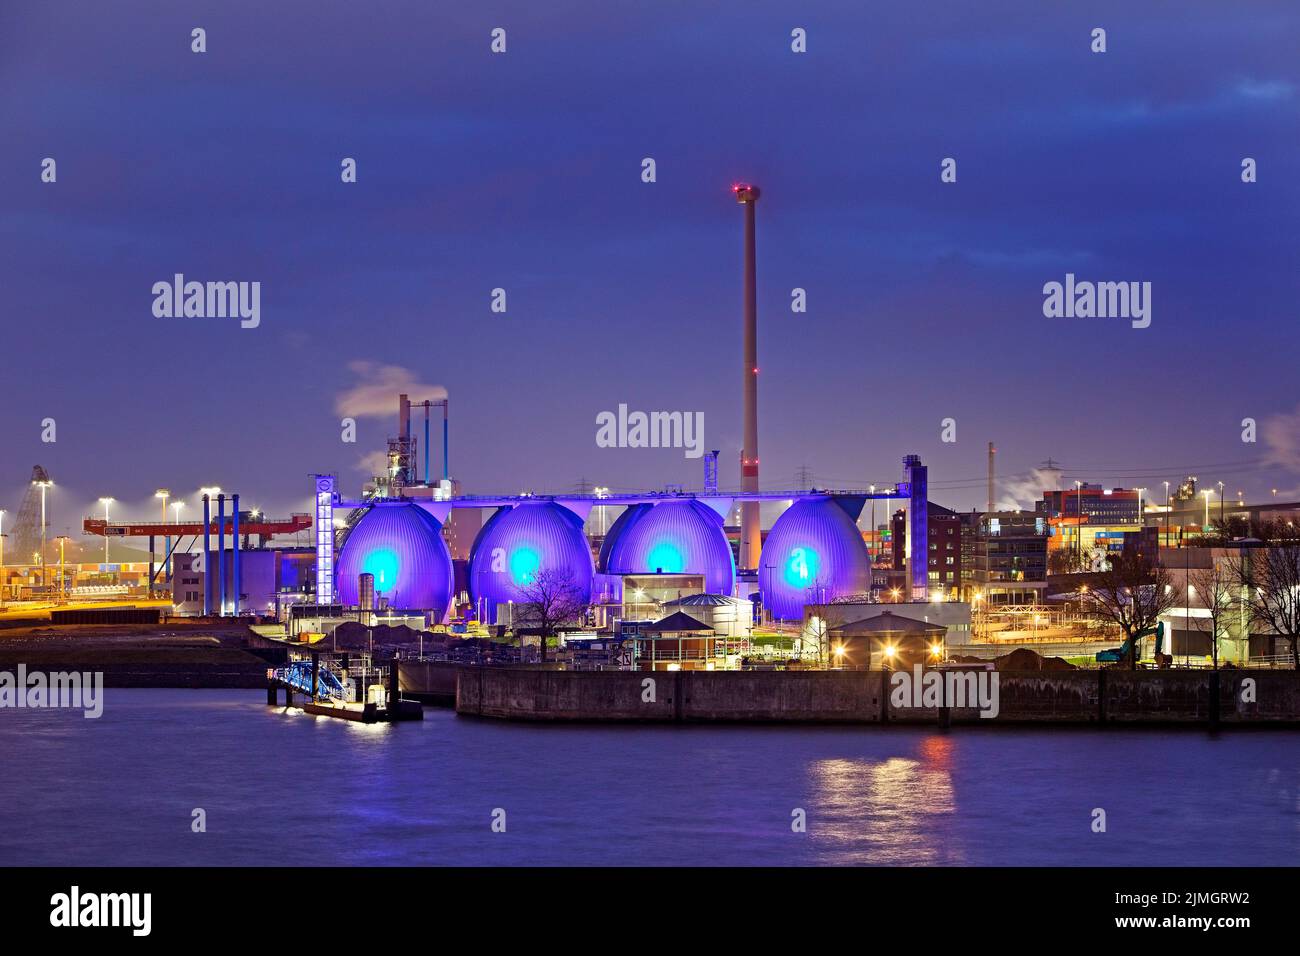 Blau beleuchtete Kläranlage Kohlbrandhoeft am Abend, Hafen Hamburg, Deutschland Stockfoto